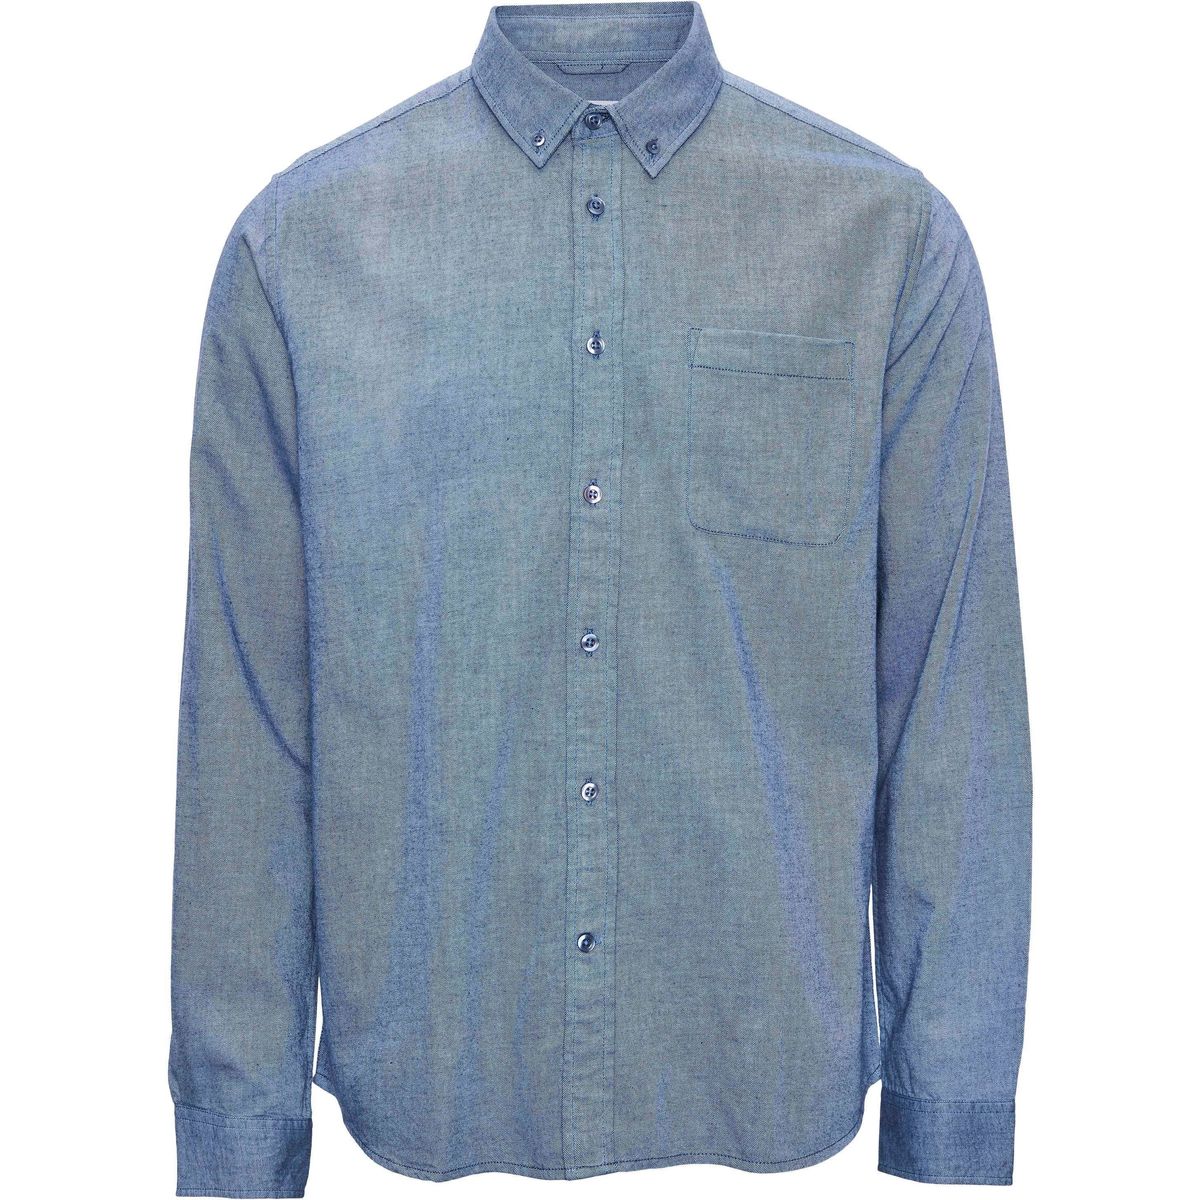 Textiel Heren Overhemden lange mouwen Knowledge Cotton Apparel Overhemd Blauw Blauw